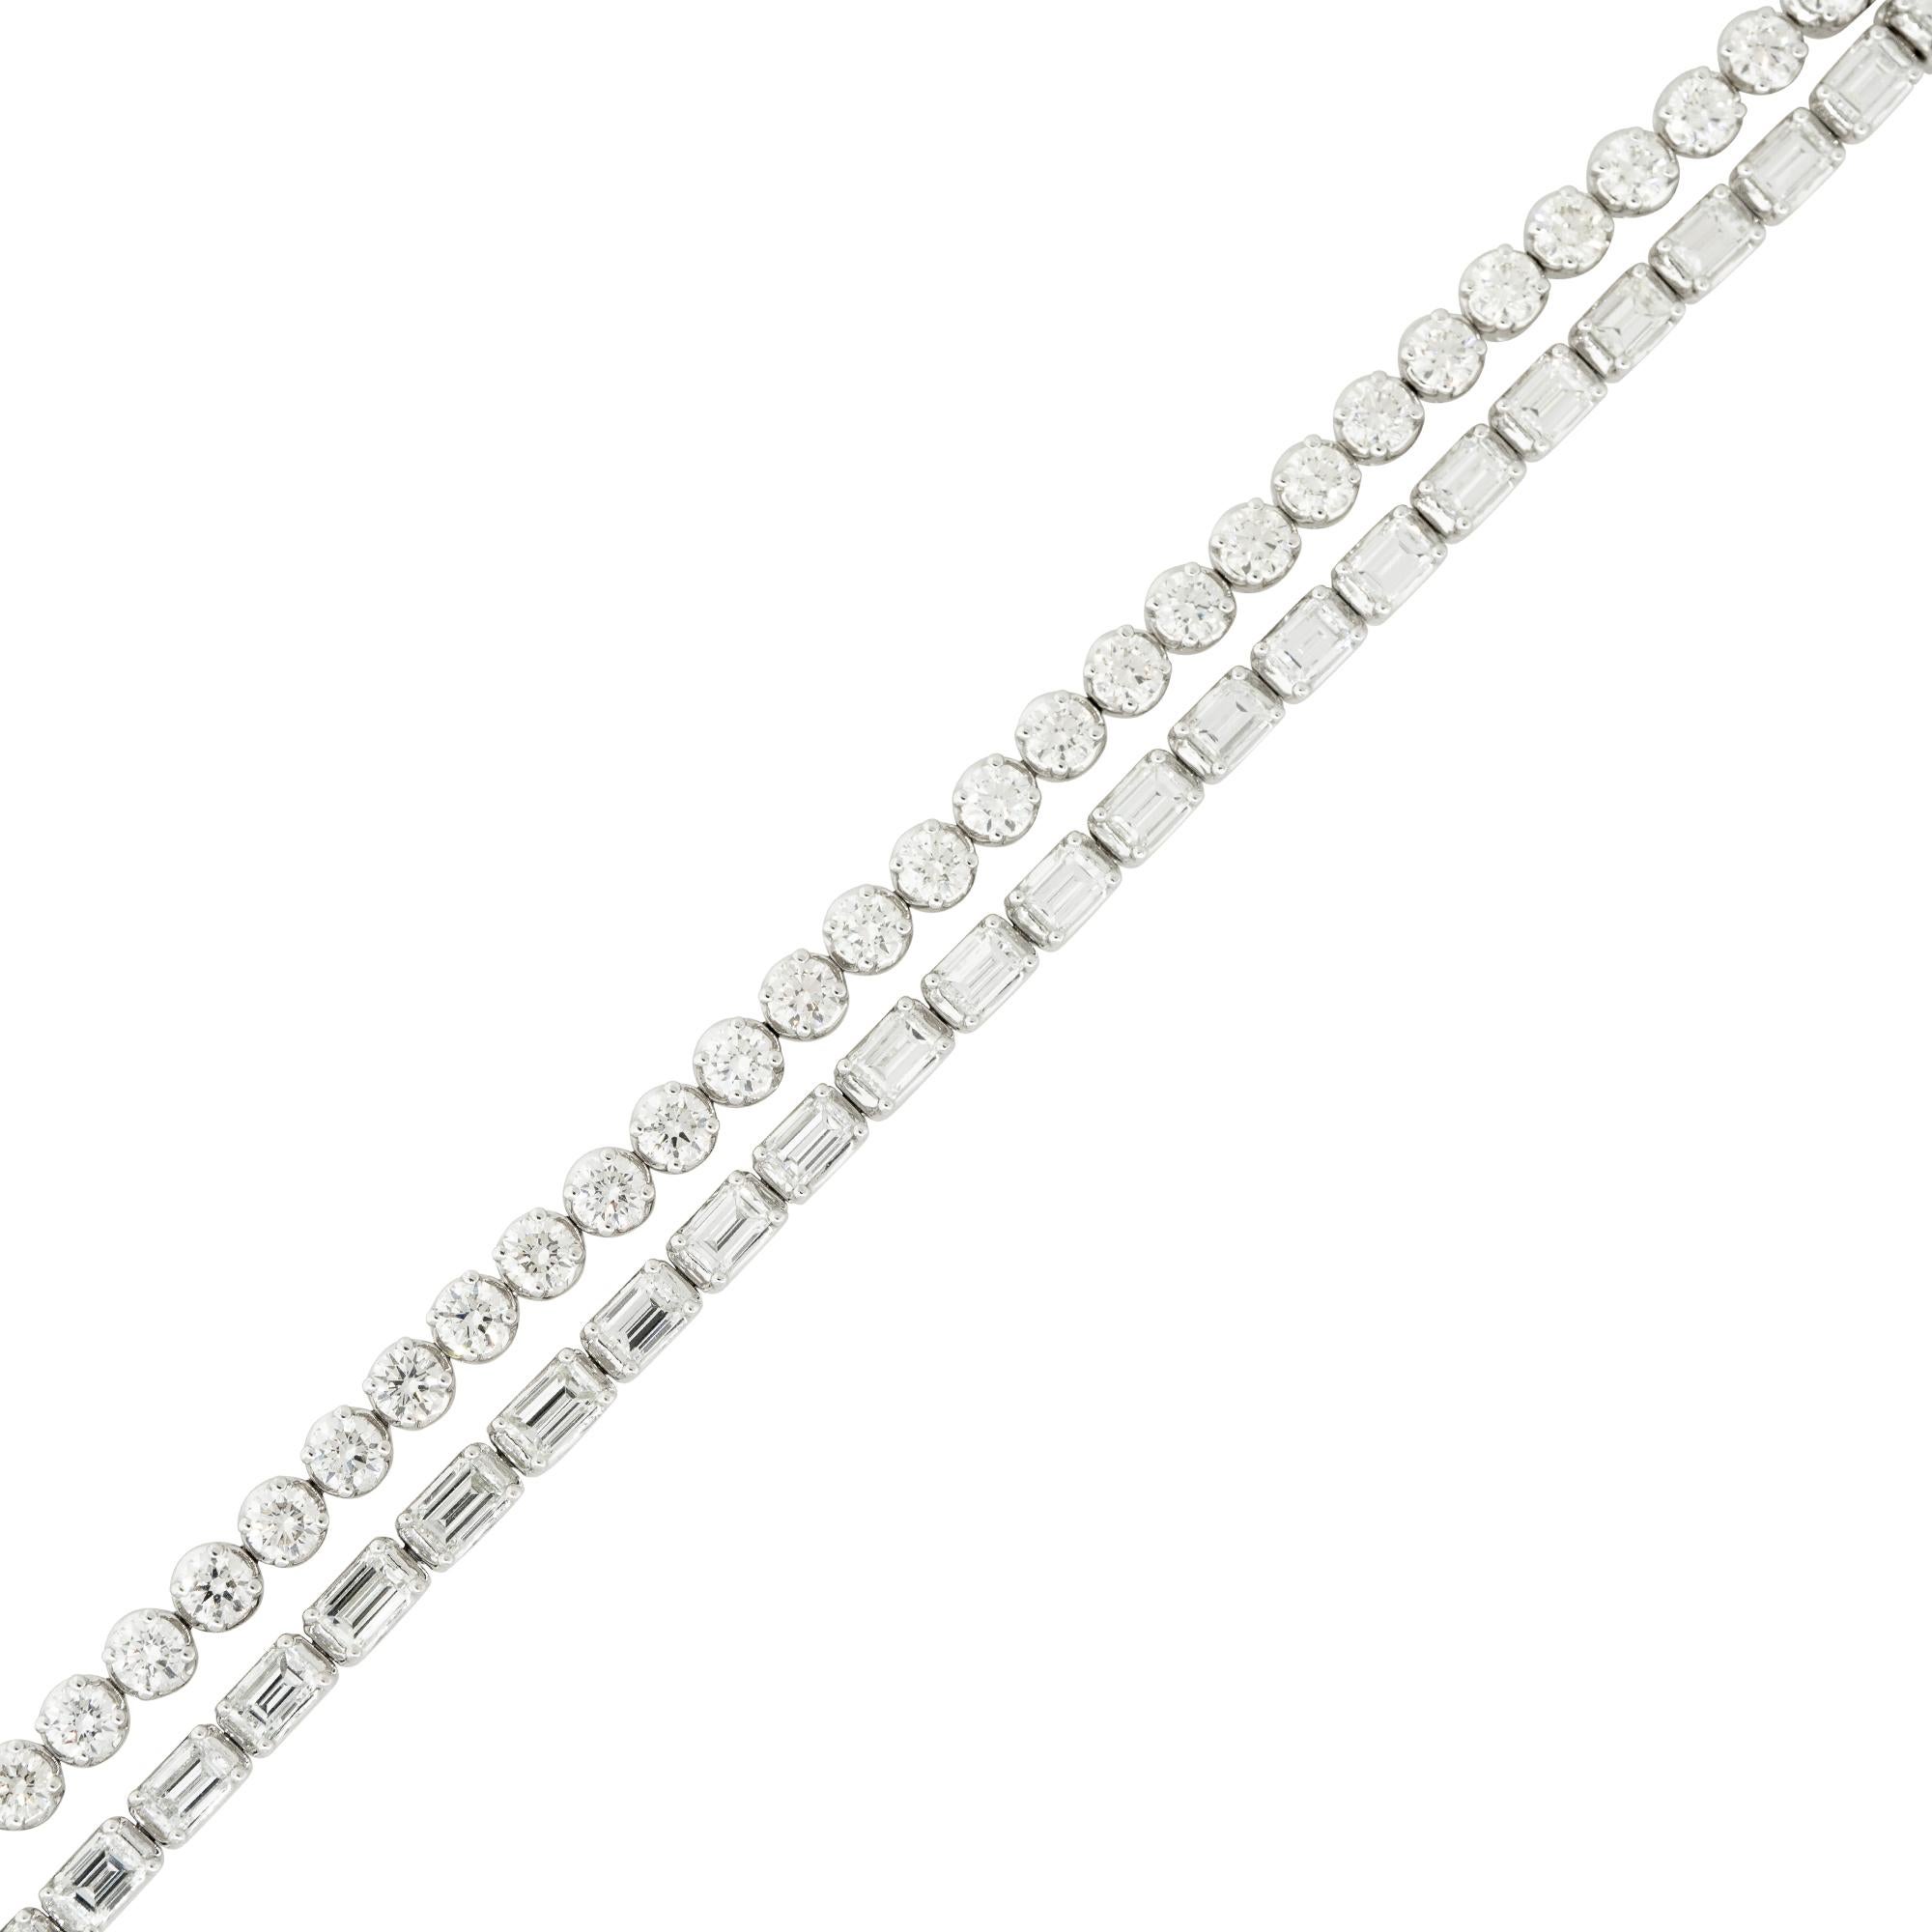 Bracelet tennis en or blanc 18k 9.29ctw double rangée de diamants
MATERIAL : Or blanc 18k
Détails des diamants : Environ 9,29ctw de diamants de taille émeraude et de diamants ronds de taille brillante. Il y a deux rangées de diamants : une rangée de